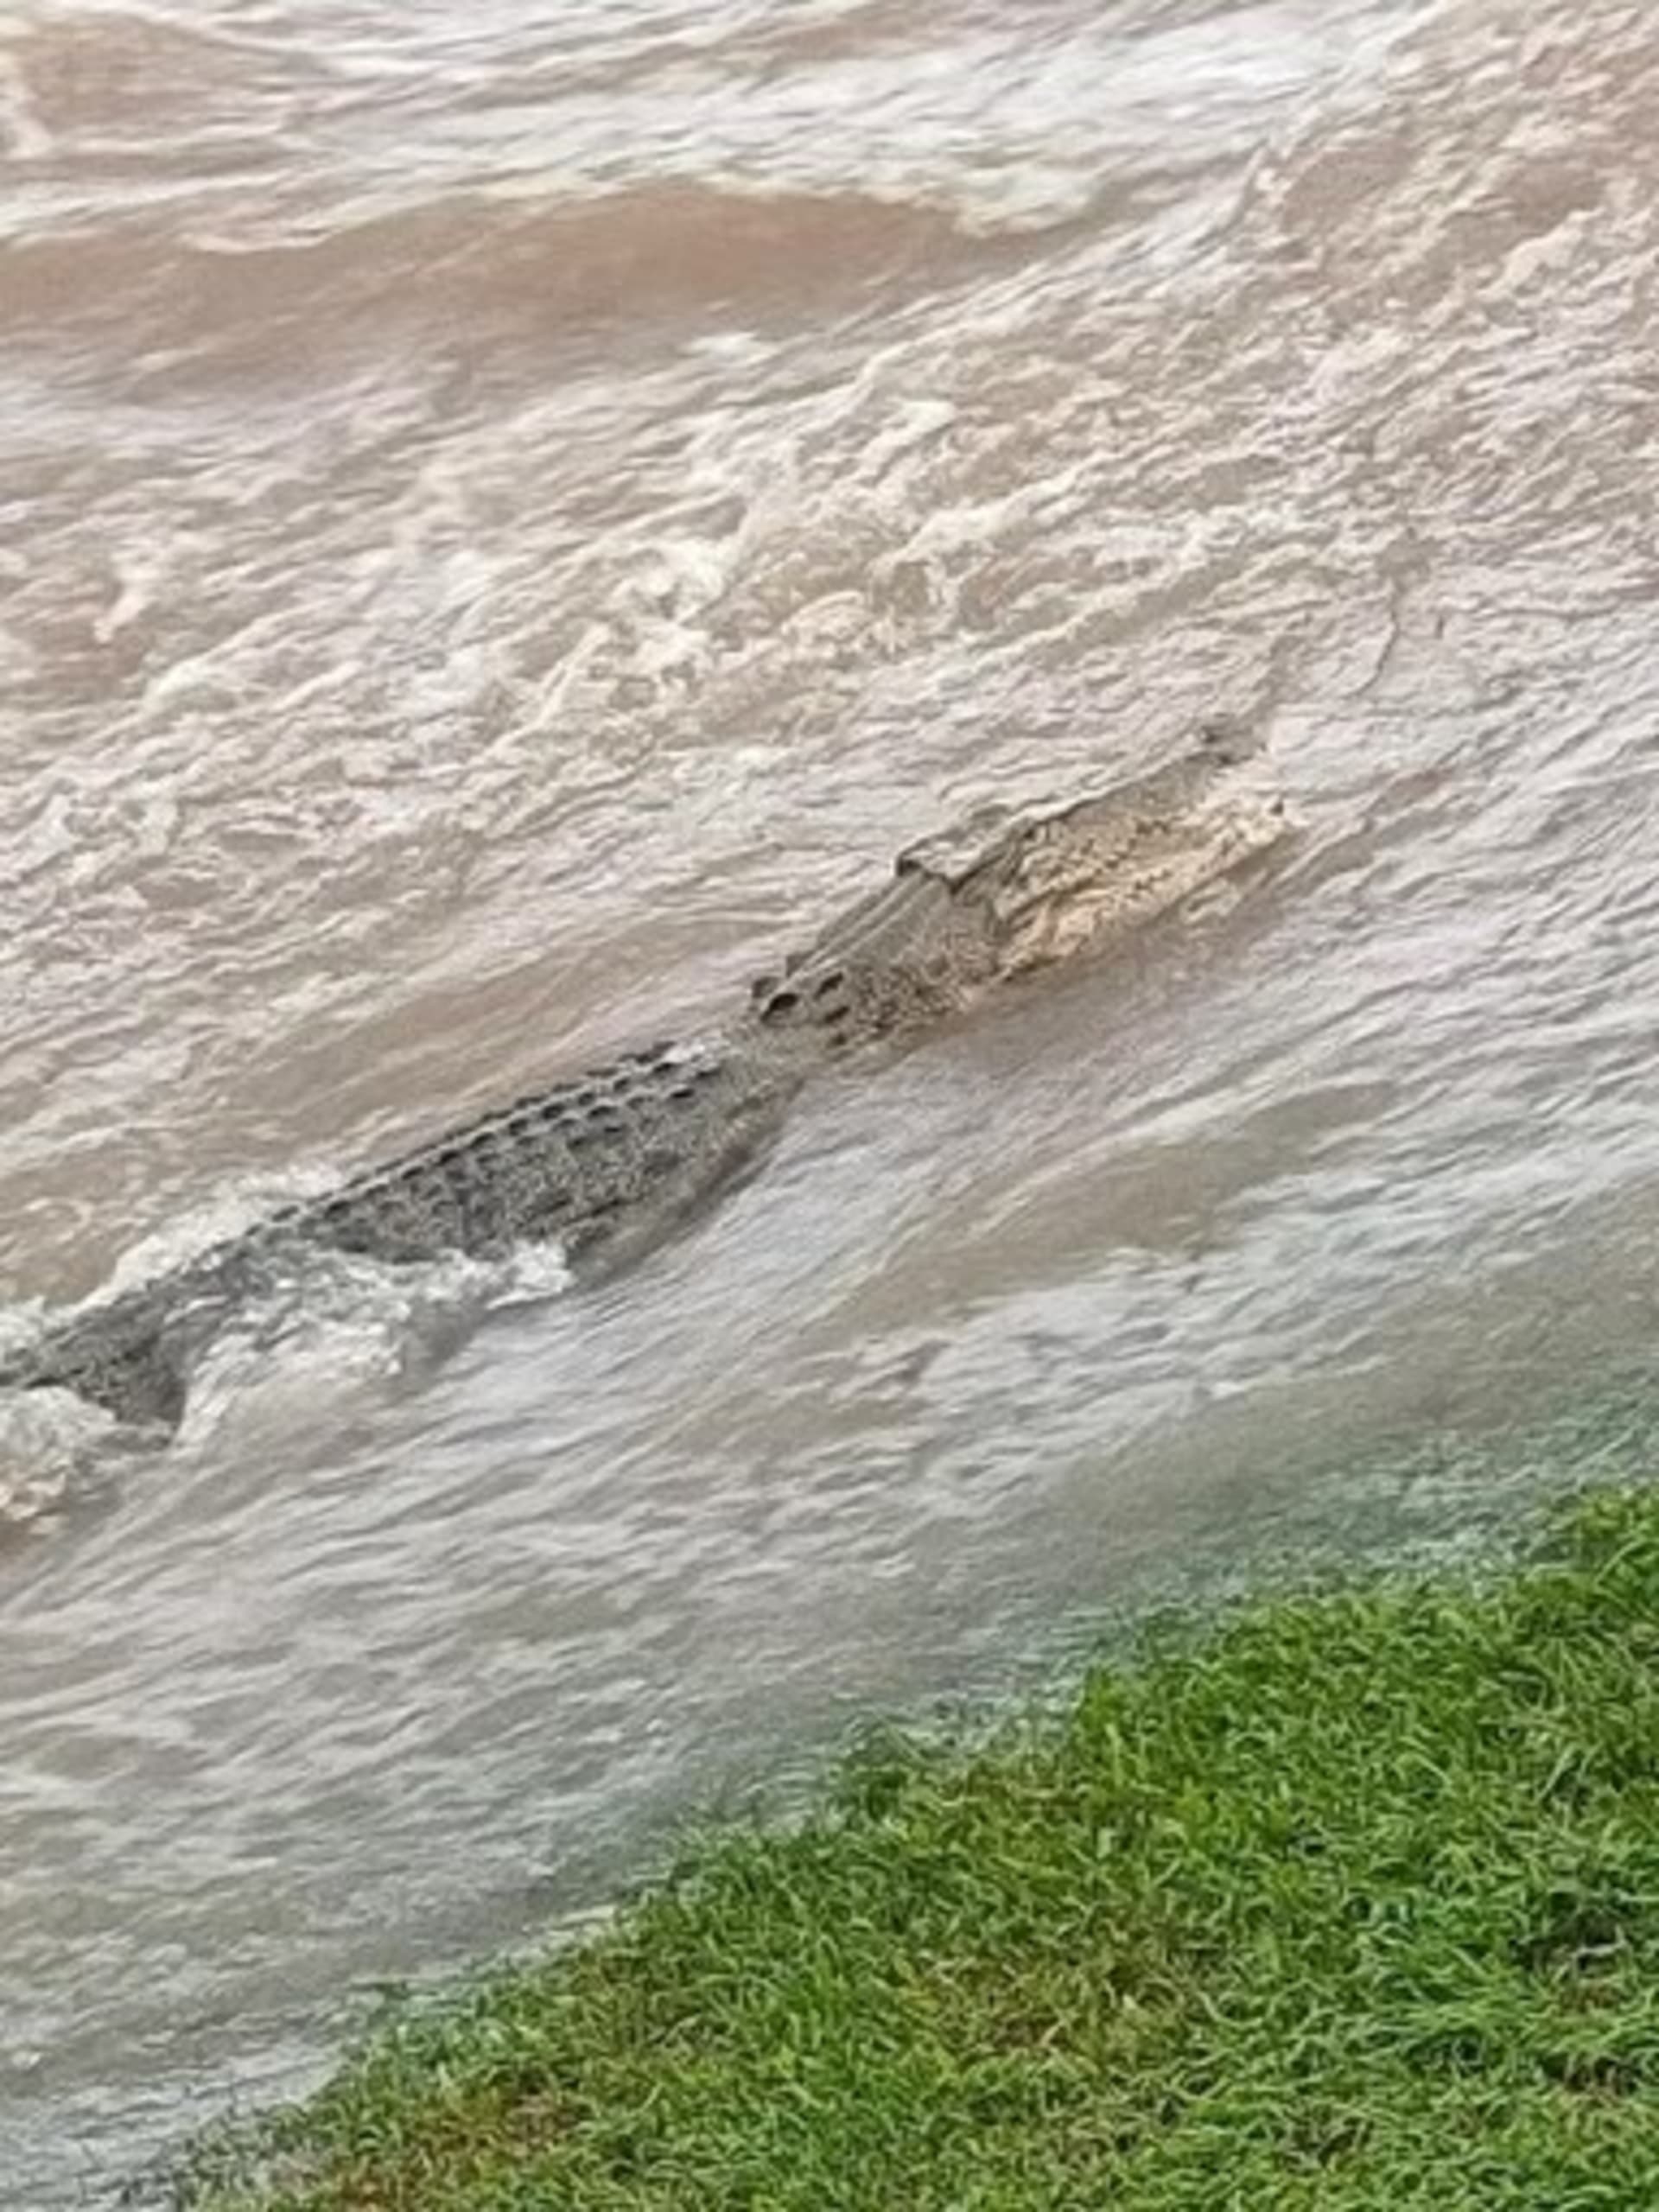 V některých zatopených městech byli zpozorováni i krokodýli.